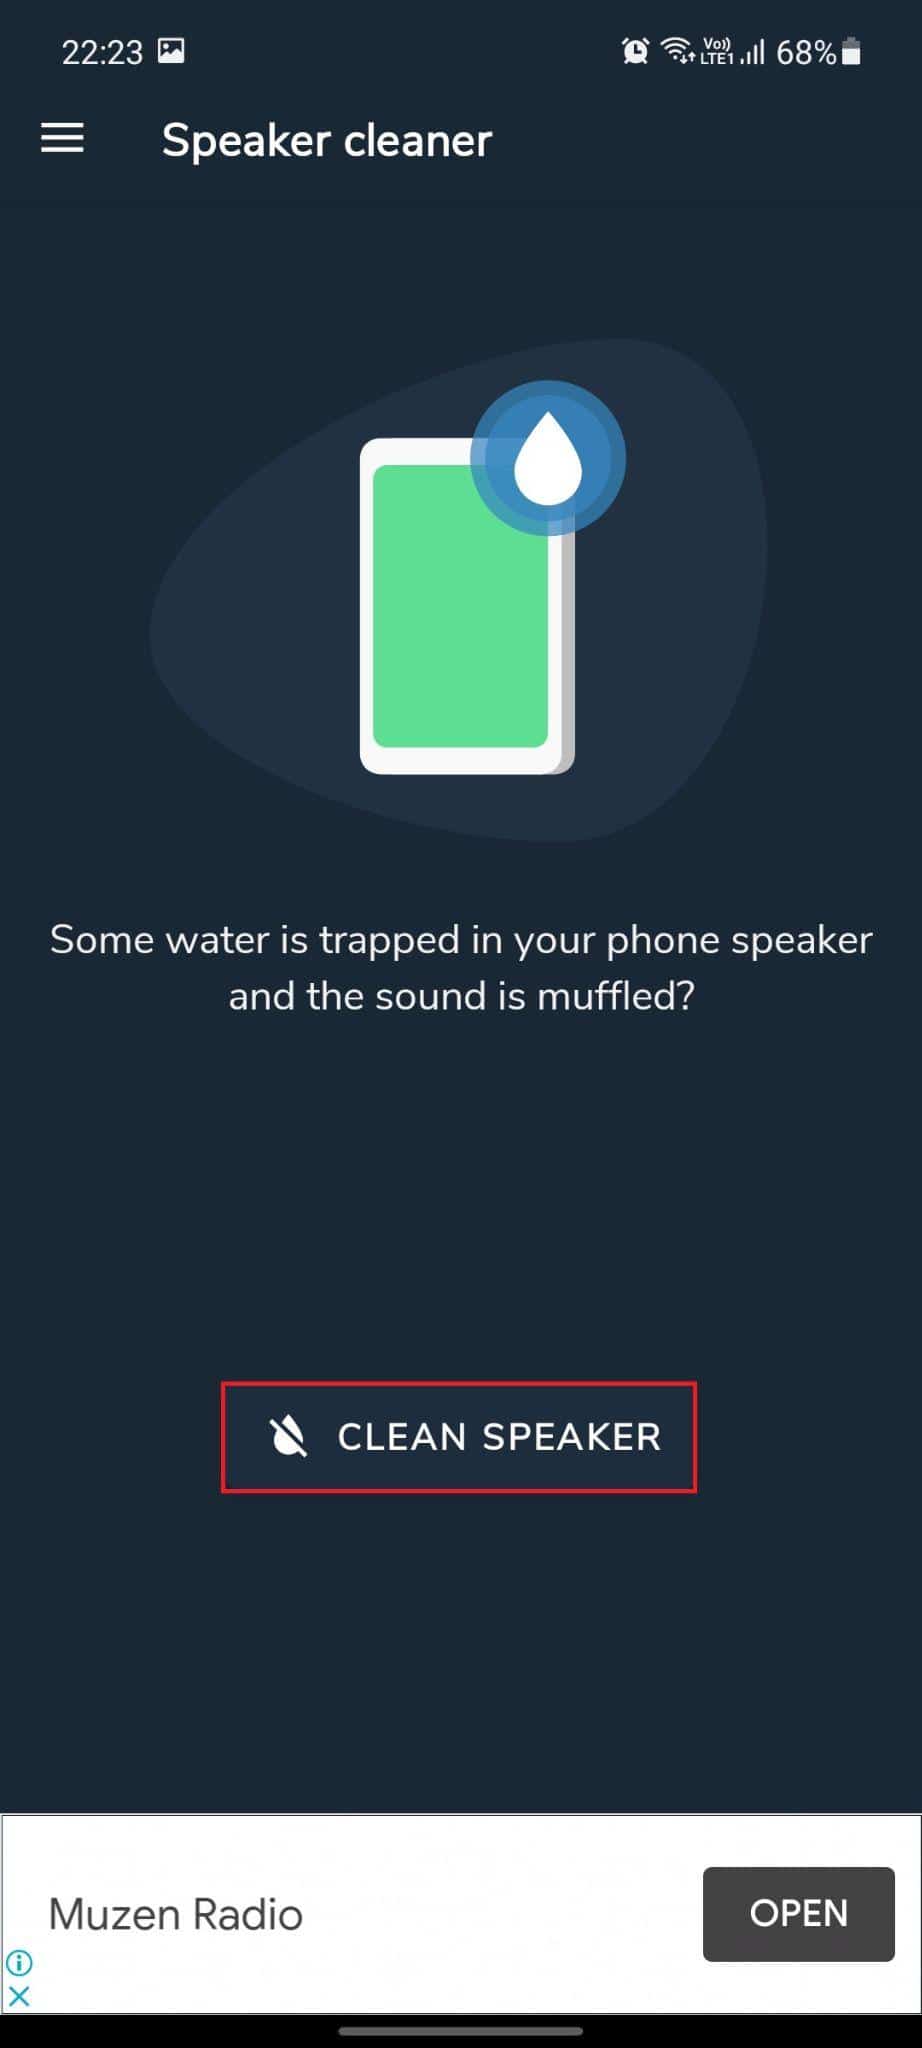 Pulitore altoparlanti: rimuovi l'acqua e correggi l'app audio. L'opzione Pulisci altoparlante è evidenziata. Come riparare i danni causati dall'acqua all'altoparlante del telefono